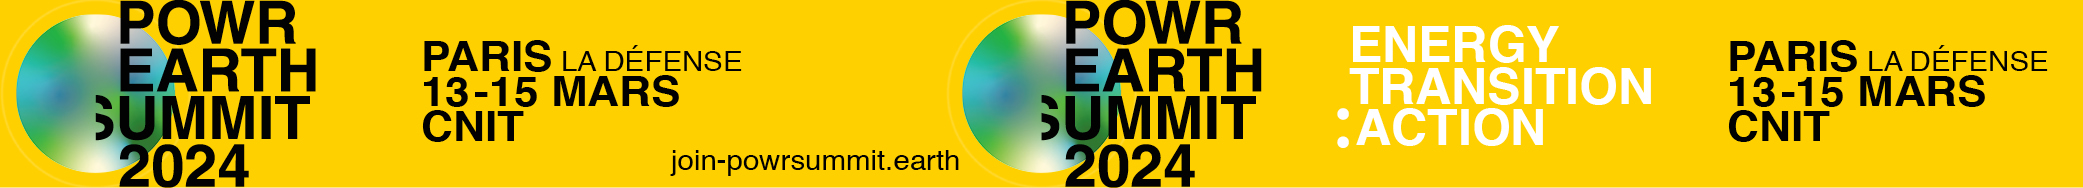 Powerearth summit 2024